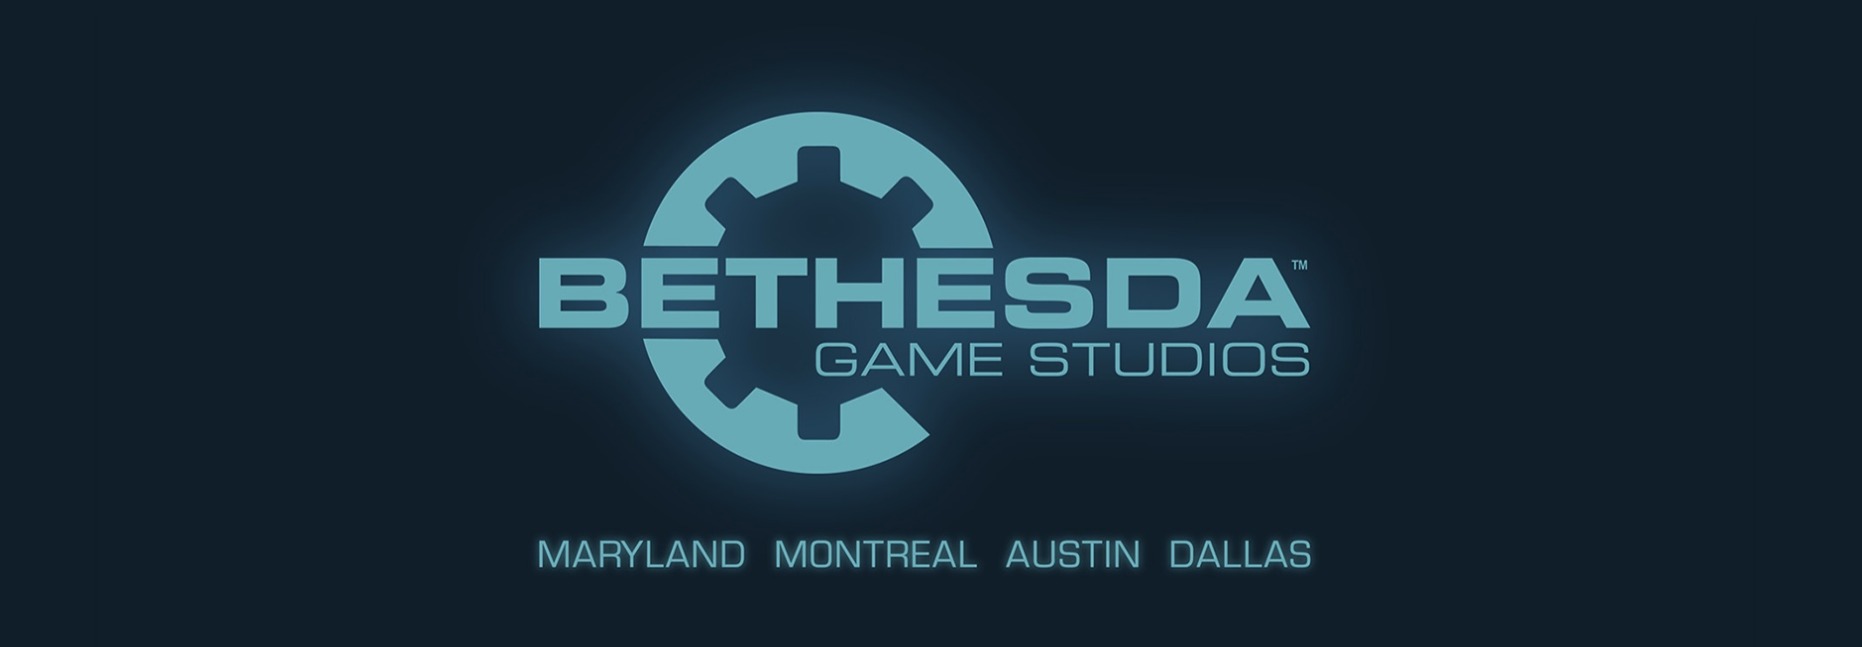 Сегодня Bethesda Game Studios, дочерняя компания ZeniMax Media, объявила, что продолжает наращивать и усиливать свои возможности в сфере разработки игр и приветствует в своих рядах Escalation Studios из Далласа, Техас.